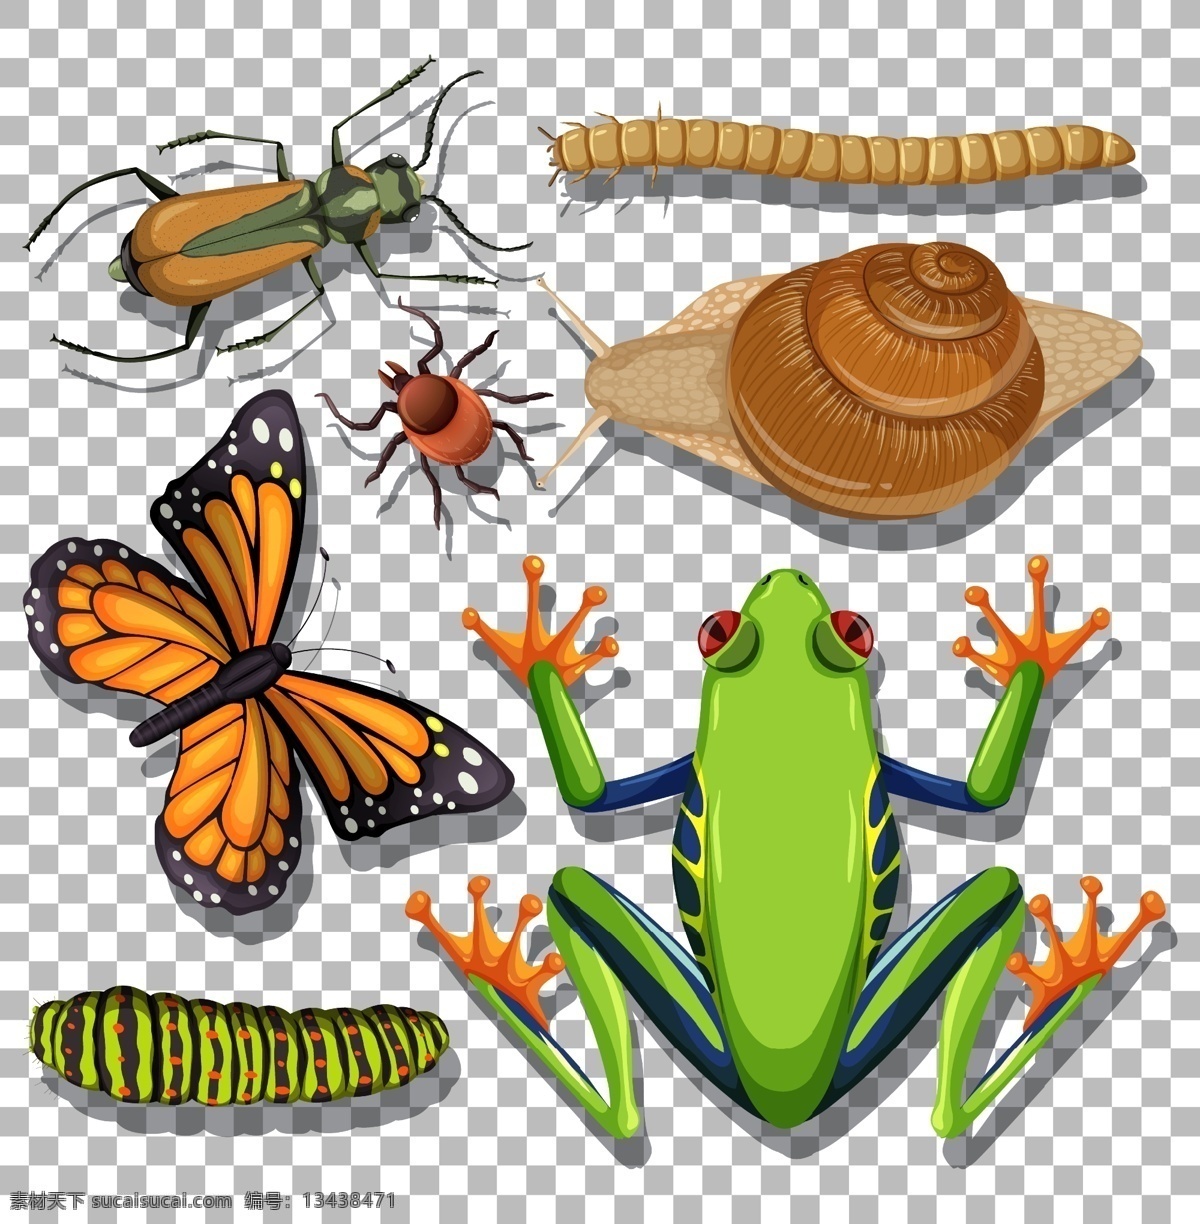 卡通昆虫图片 卡通昆虫 生命周期 进化 退化 演变 虫子 发展 生物 学科 生物世界 昆虫